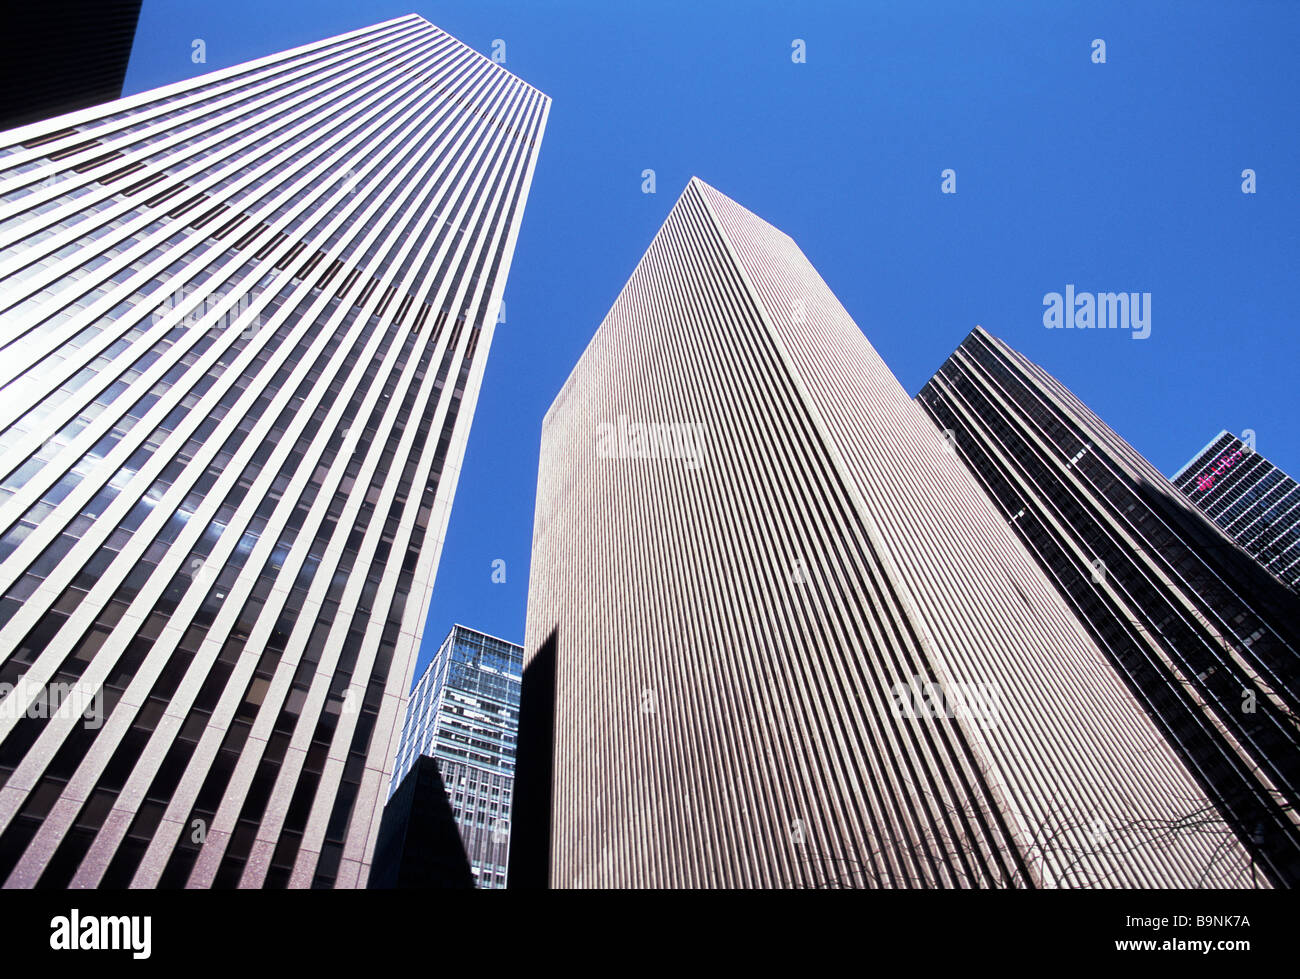 New York City Avenue der Americas Sixth Avenue. Wolkenkratzer sind Teil des Rockefeller Center Komplexes. Skyline New York Midtown Manhattan Stockfoto